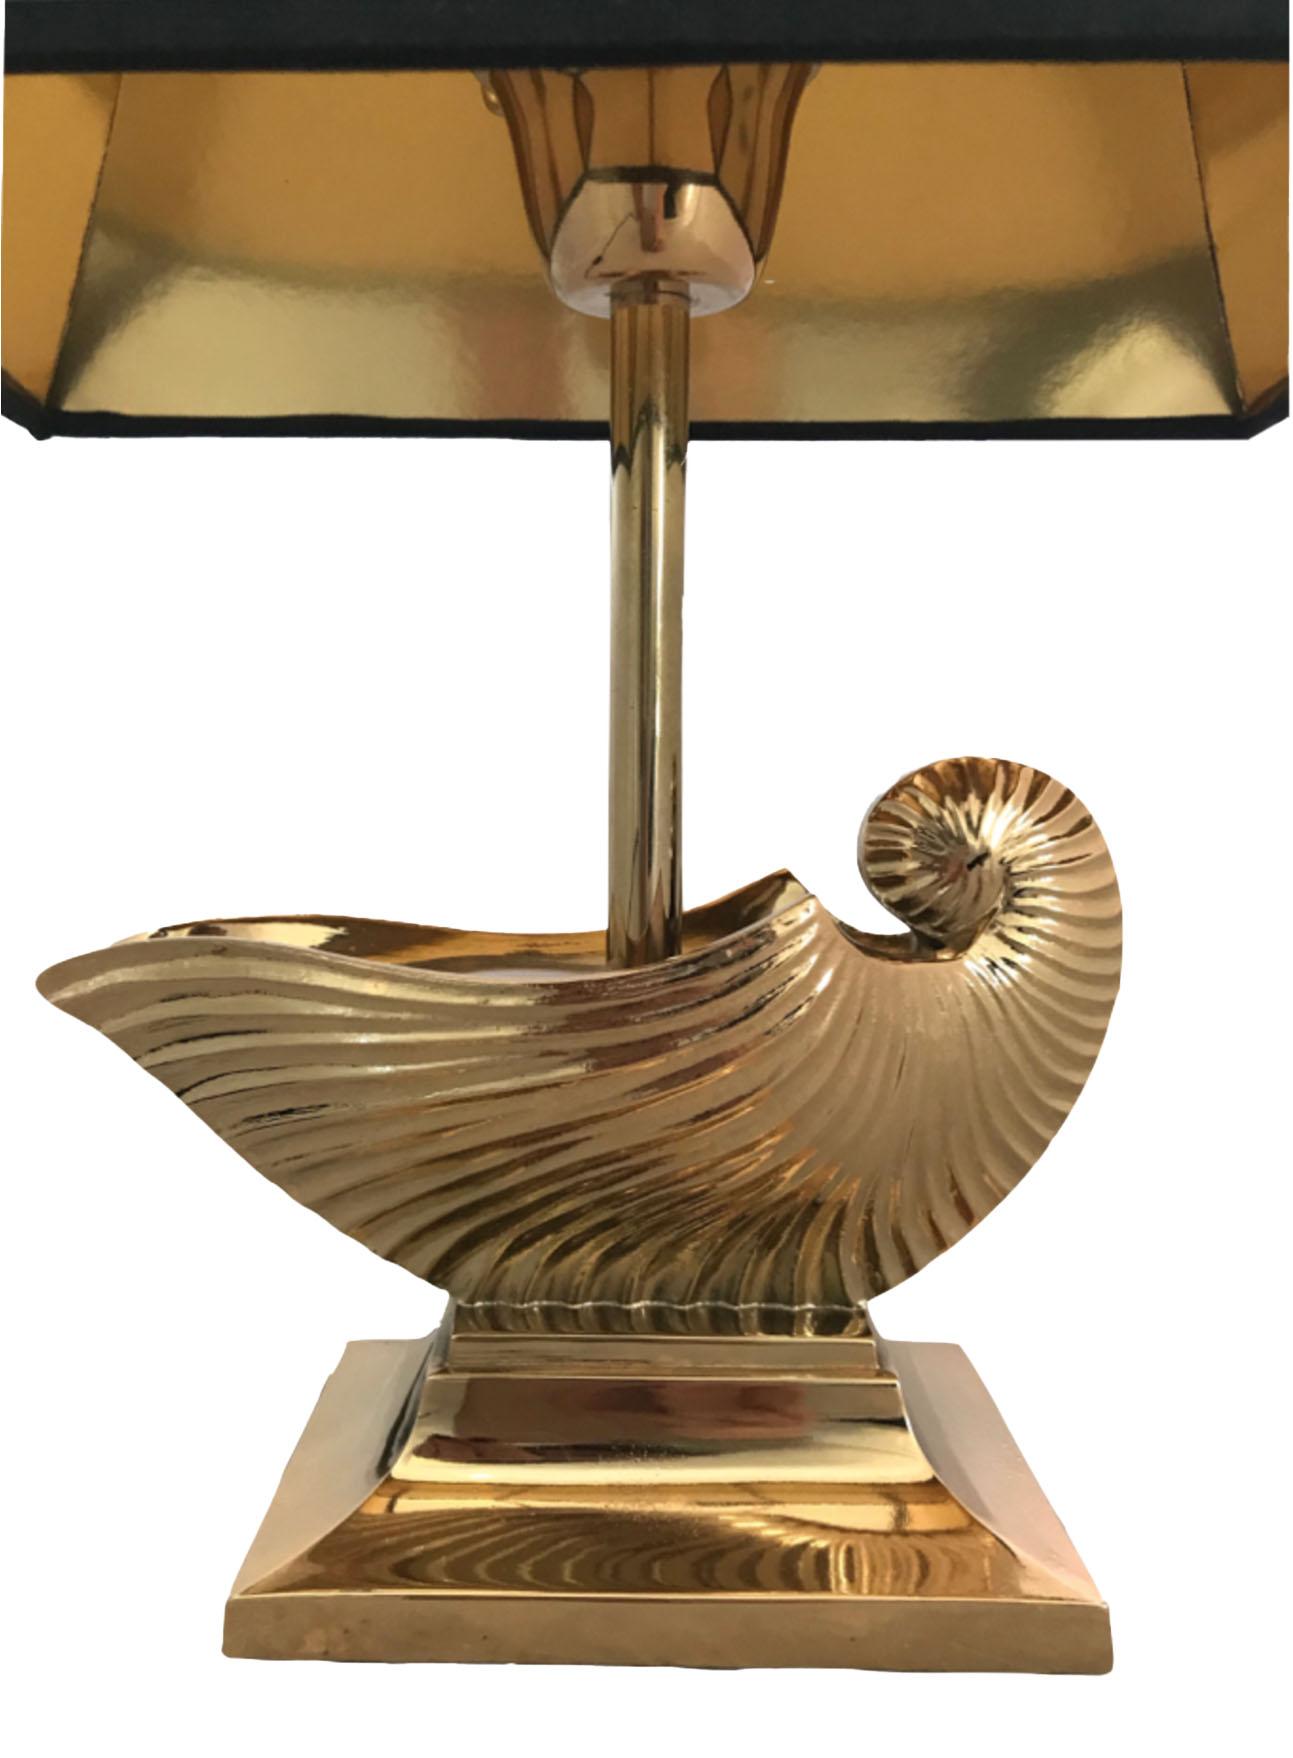 Lampe à poser en métal laitonné avec coquille de nautile Maison Charles

L'abat-jour noir avec intérieur doré est inclus.